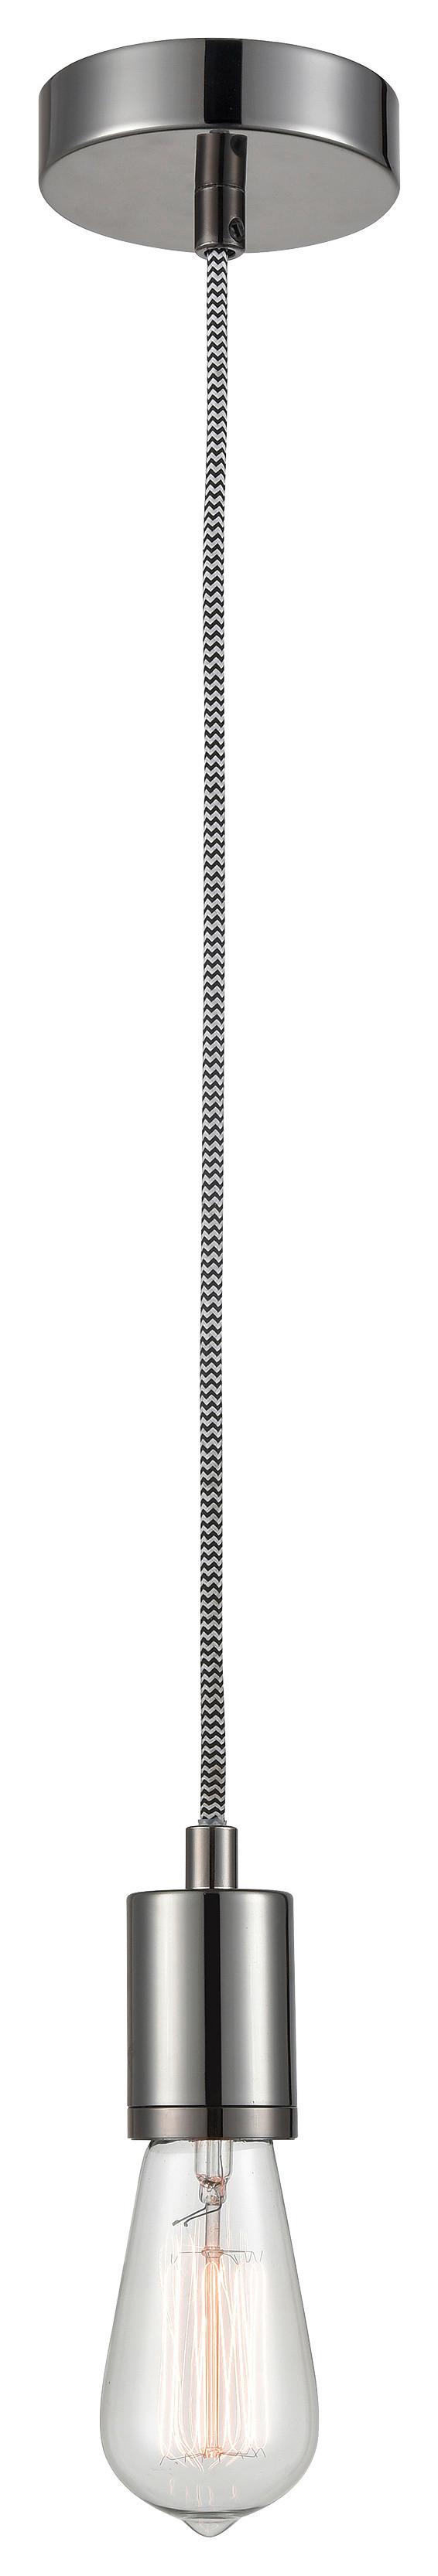 Ovjes Za Stropnu Svjetiljku Jannis - boje kroma, Modern, metal (120cm) - Modern Living